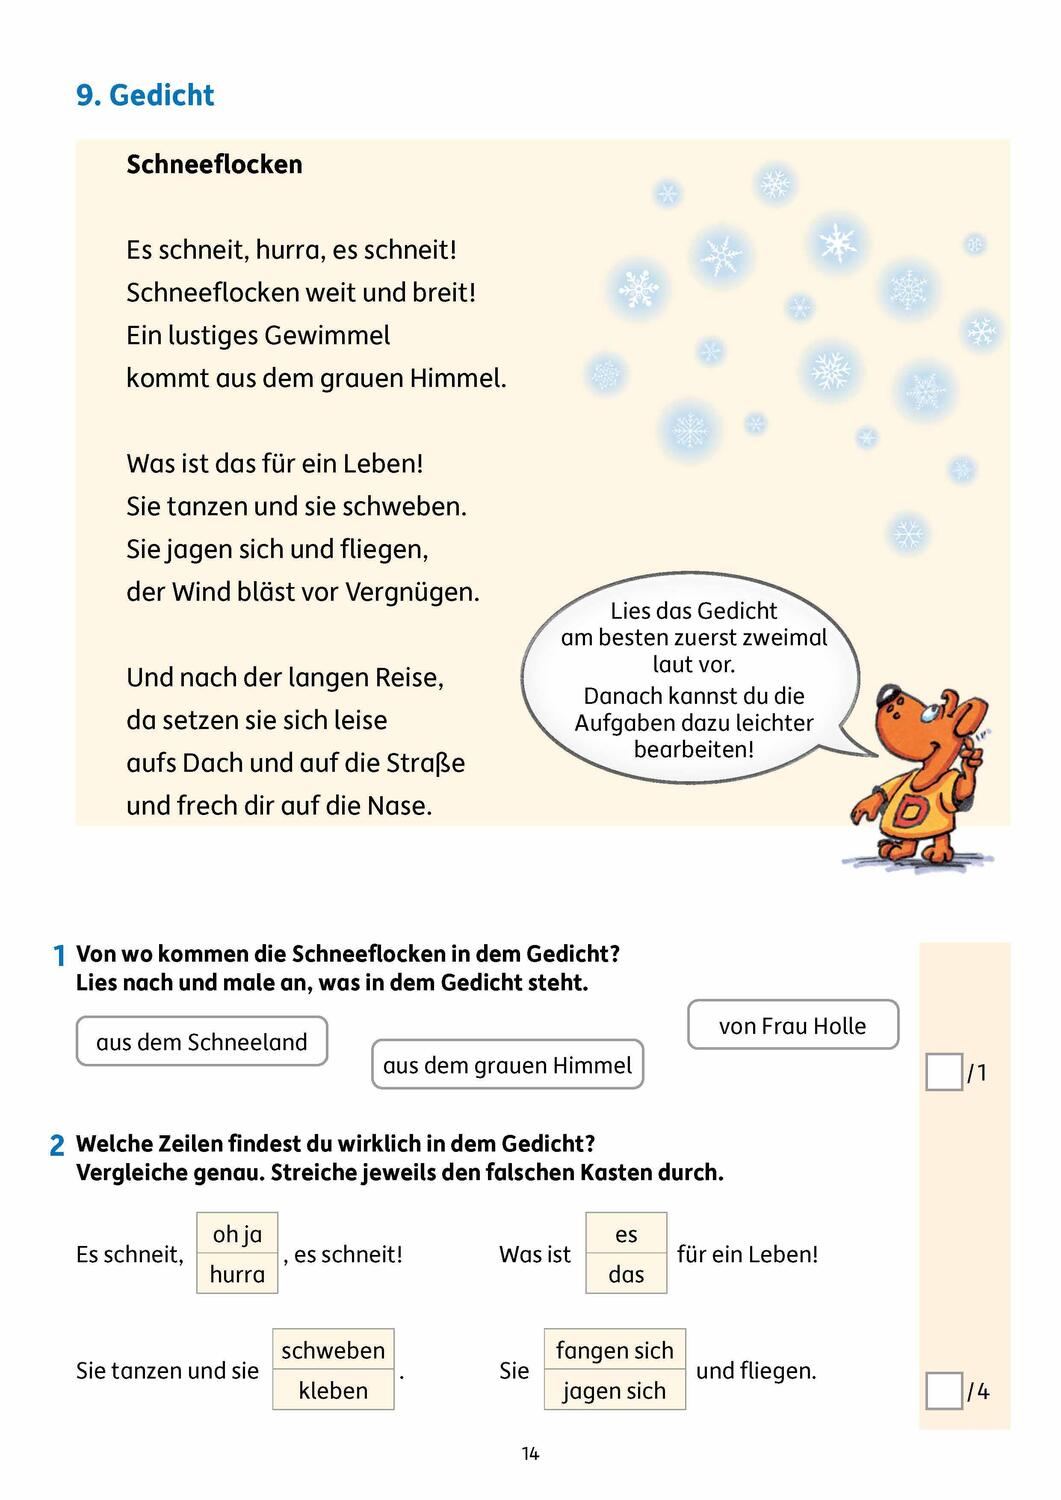 Bild: 9783881002929 | Lesetests in Deutsch - Lernzielkontrollen 2. Klasse, A4- Heft | Heiß